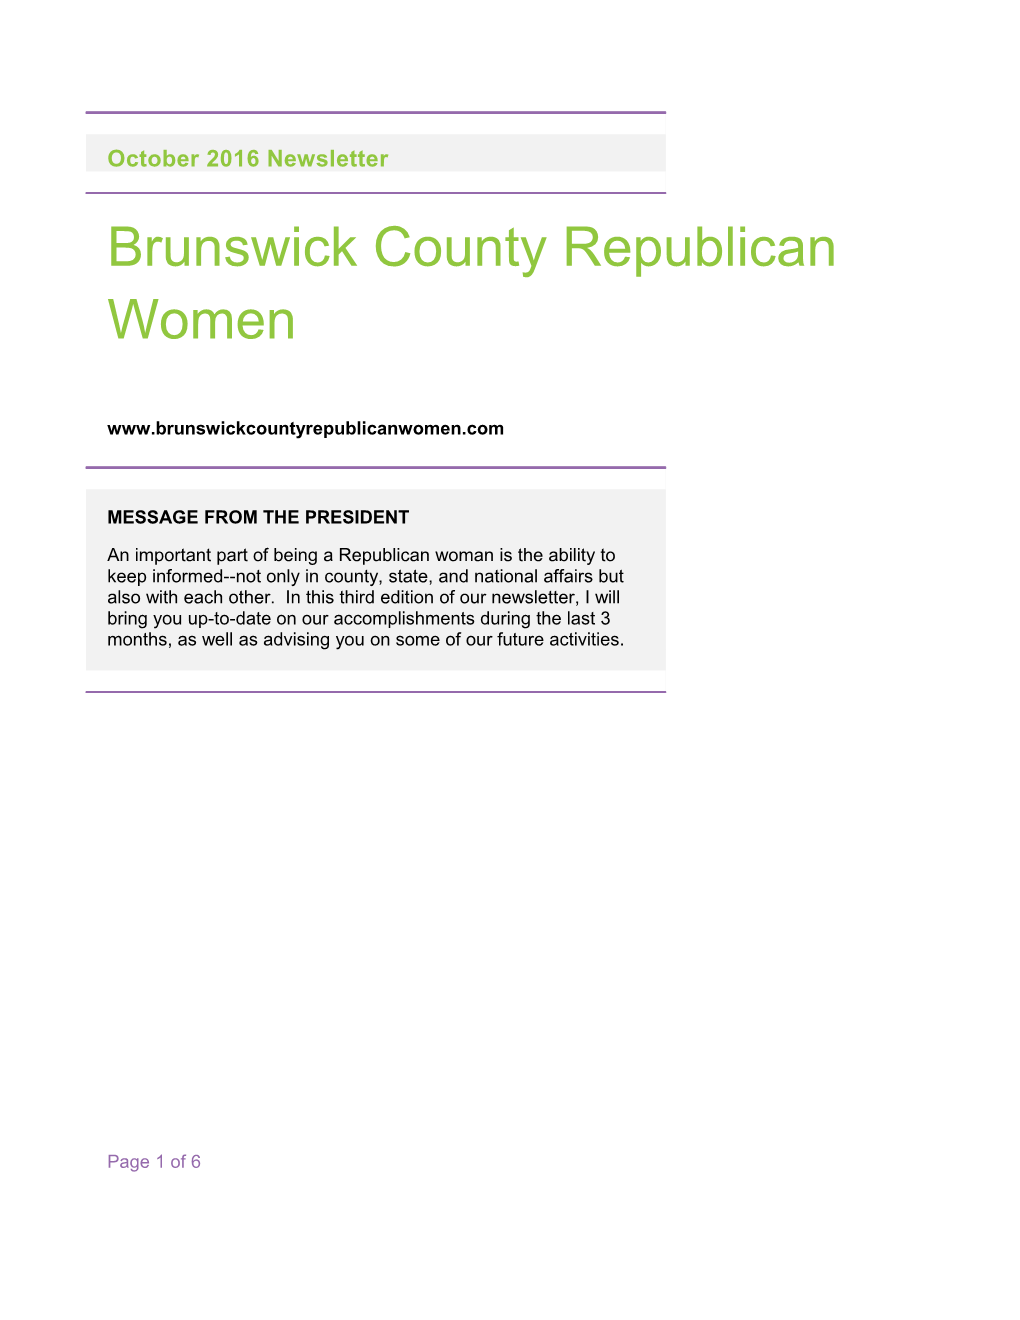 B Runswick County Republican Women